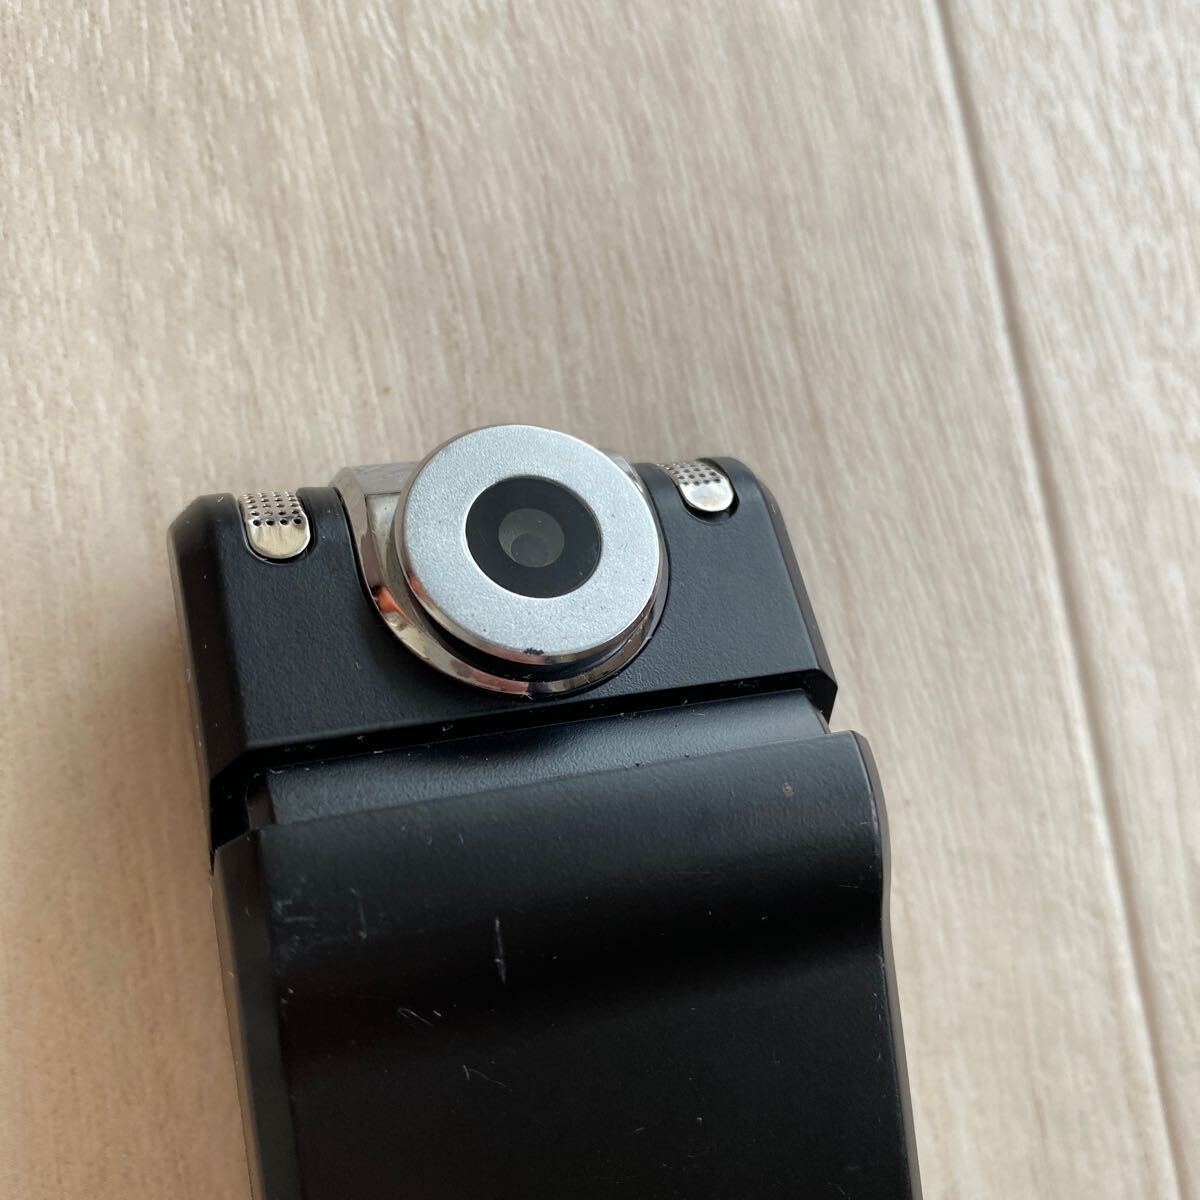 Bearmax IC магнитофон камера есть диктофон бесплатная доставка USB зарядка S906